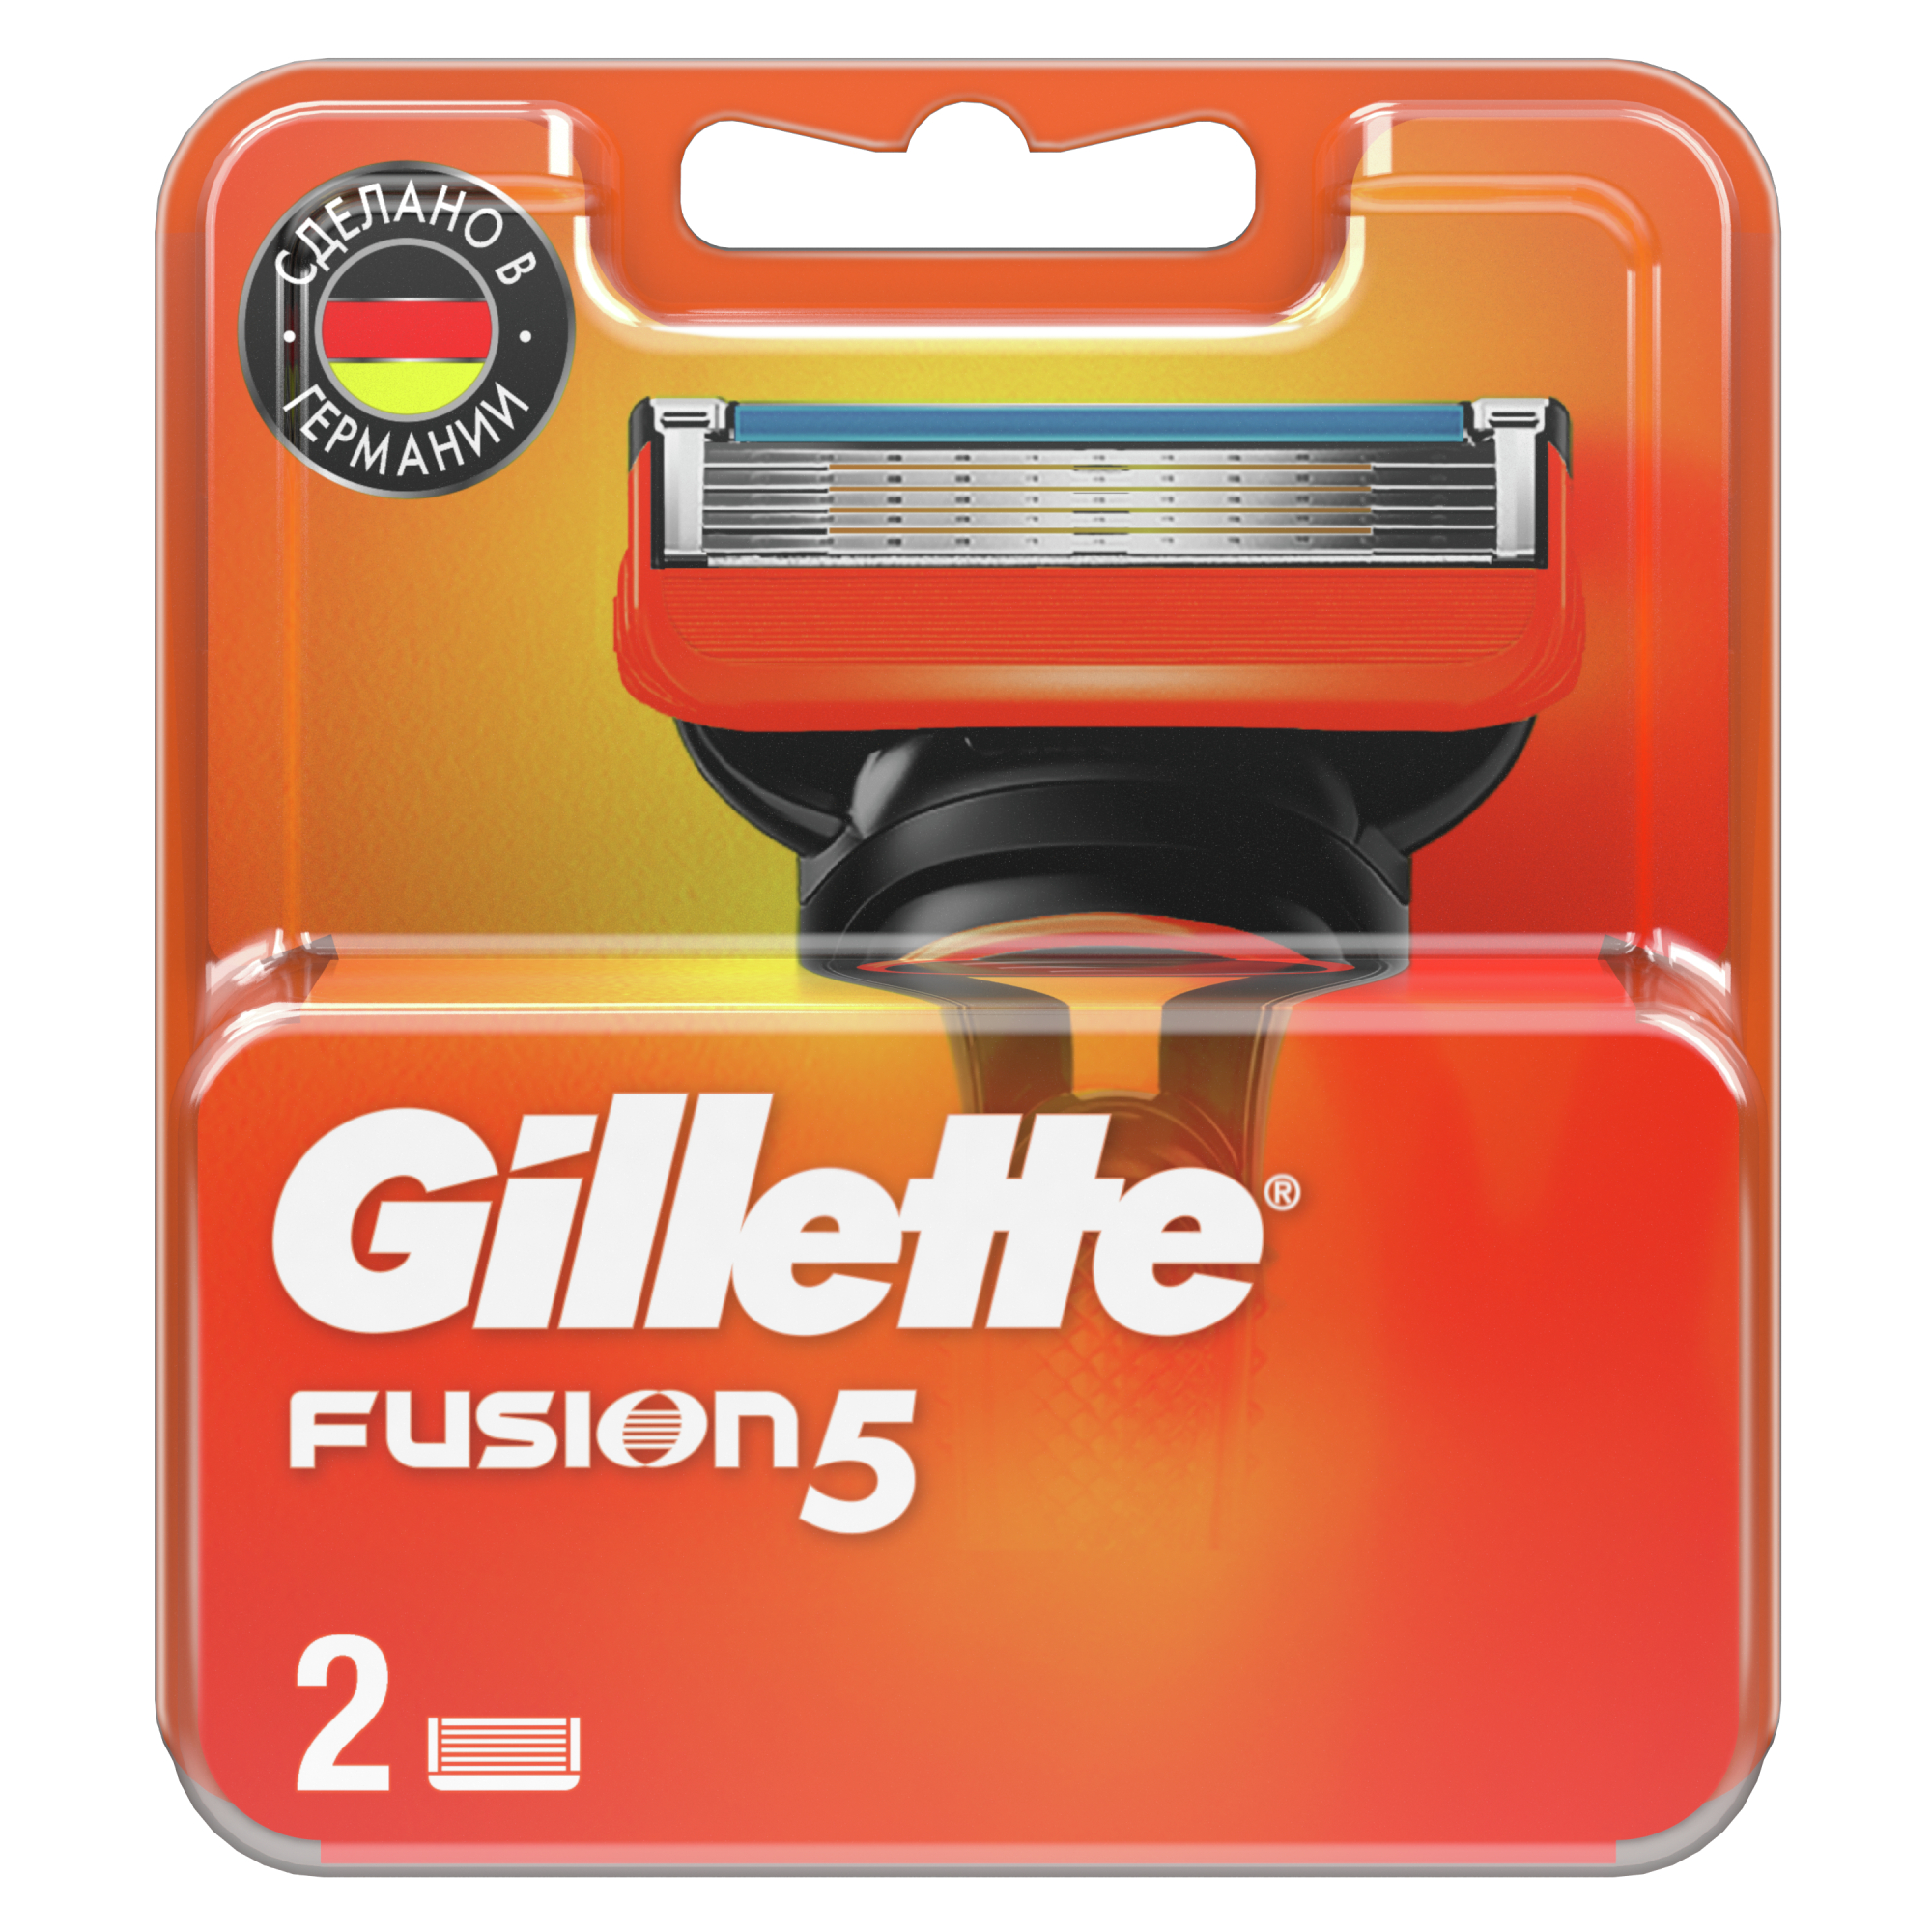 Сменные кассеты Gillette Fusion5 для мужской бритвы, 2 шт, с 5 лезвиями, c точным триммером для труднодоступных мест цена и фото